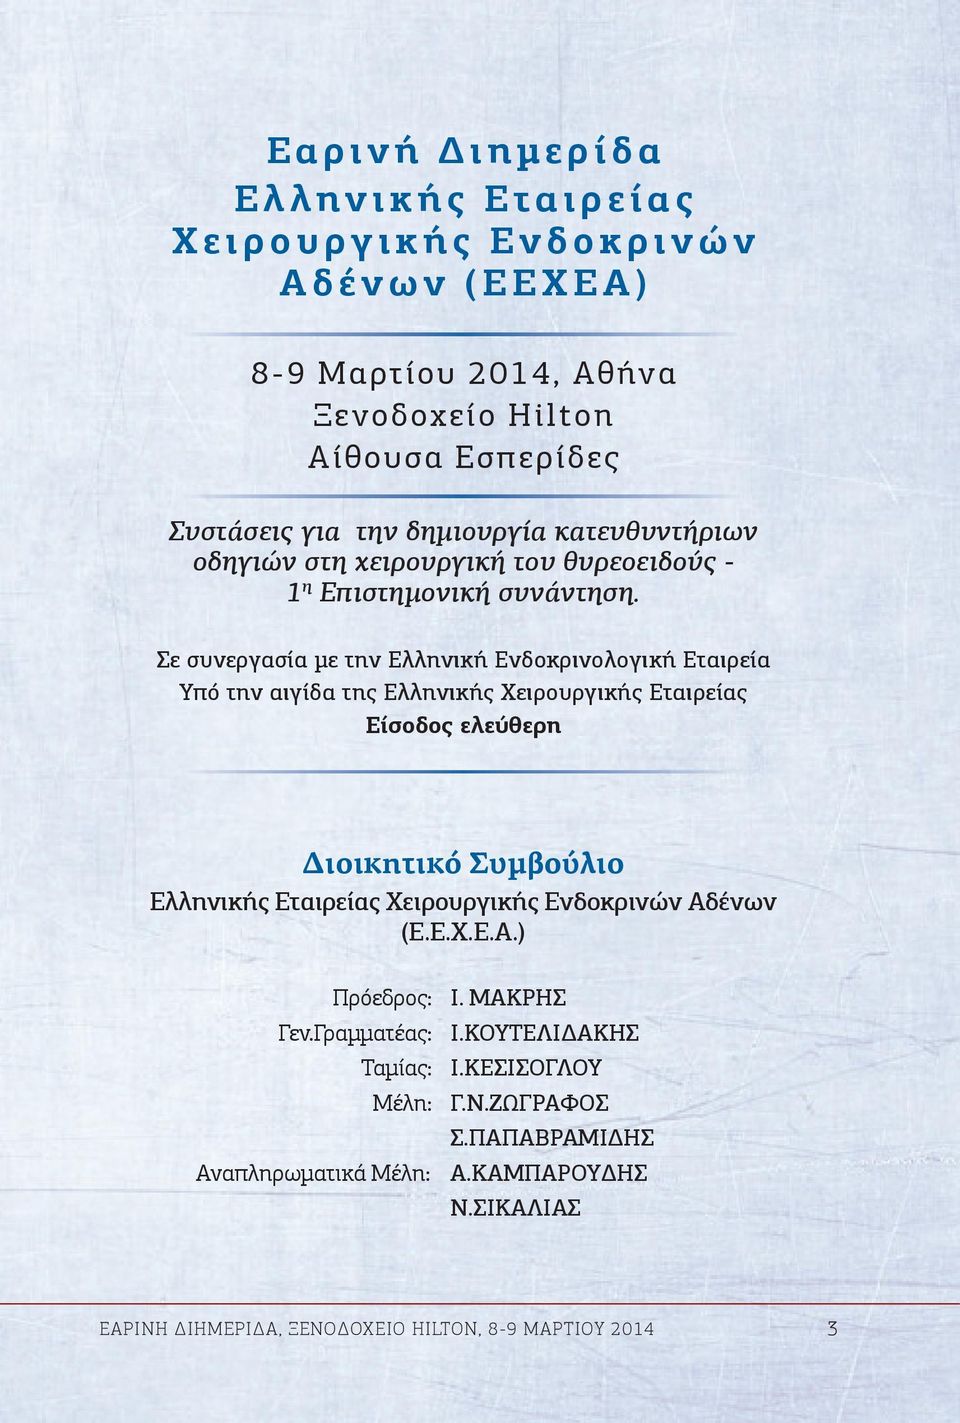 Σε συνεργασία με την Ελληνική Ενδοκρινολογική Εταιρεία Υπό την αιγίδα της Ελληνικής Χειρουργικής Εταιρείας Eίσοδος ελεύθερη Διοικητικό Συμβούλιο Ελληνικής Εταιρείας Χειρουργικής